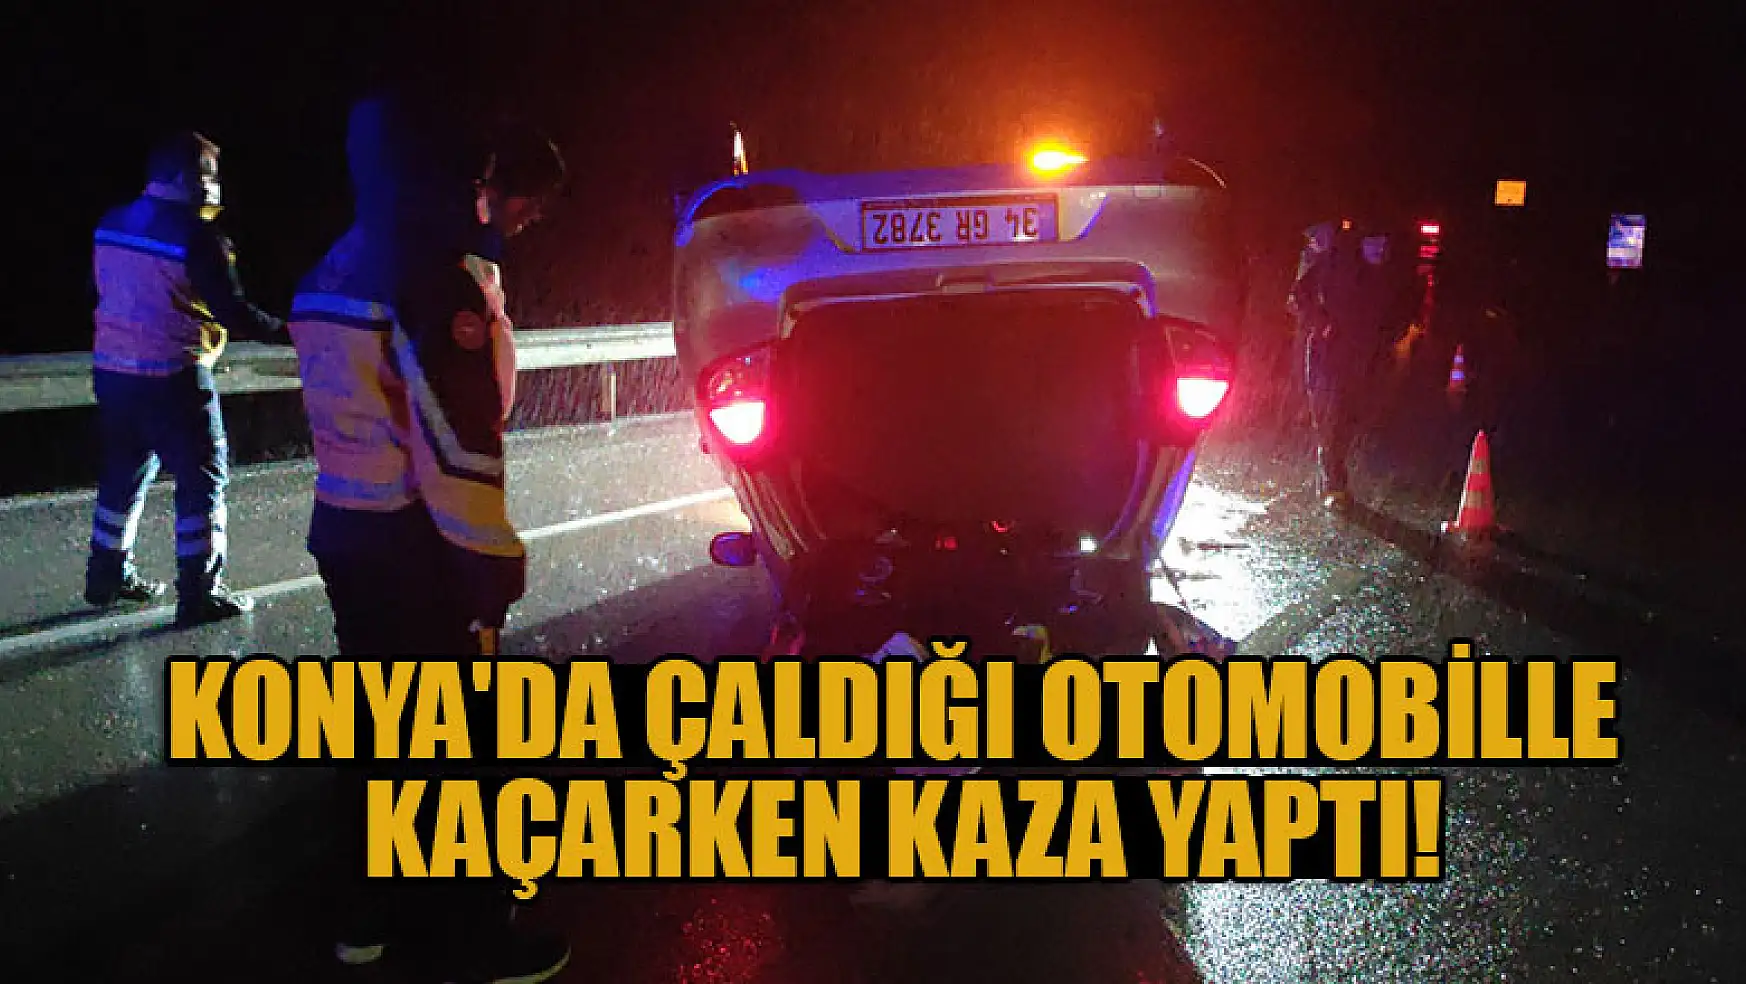 Konya'da çaldığı otomobille kaçarken kaza yaptı!